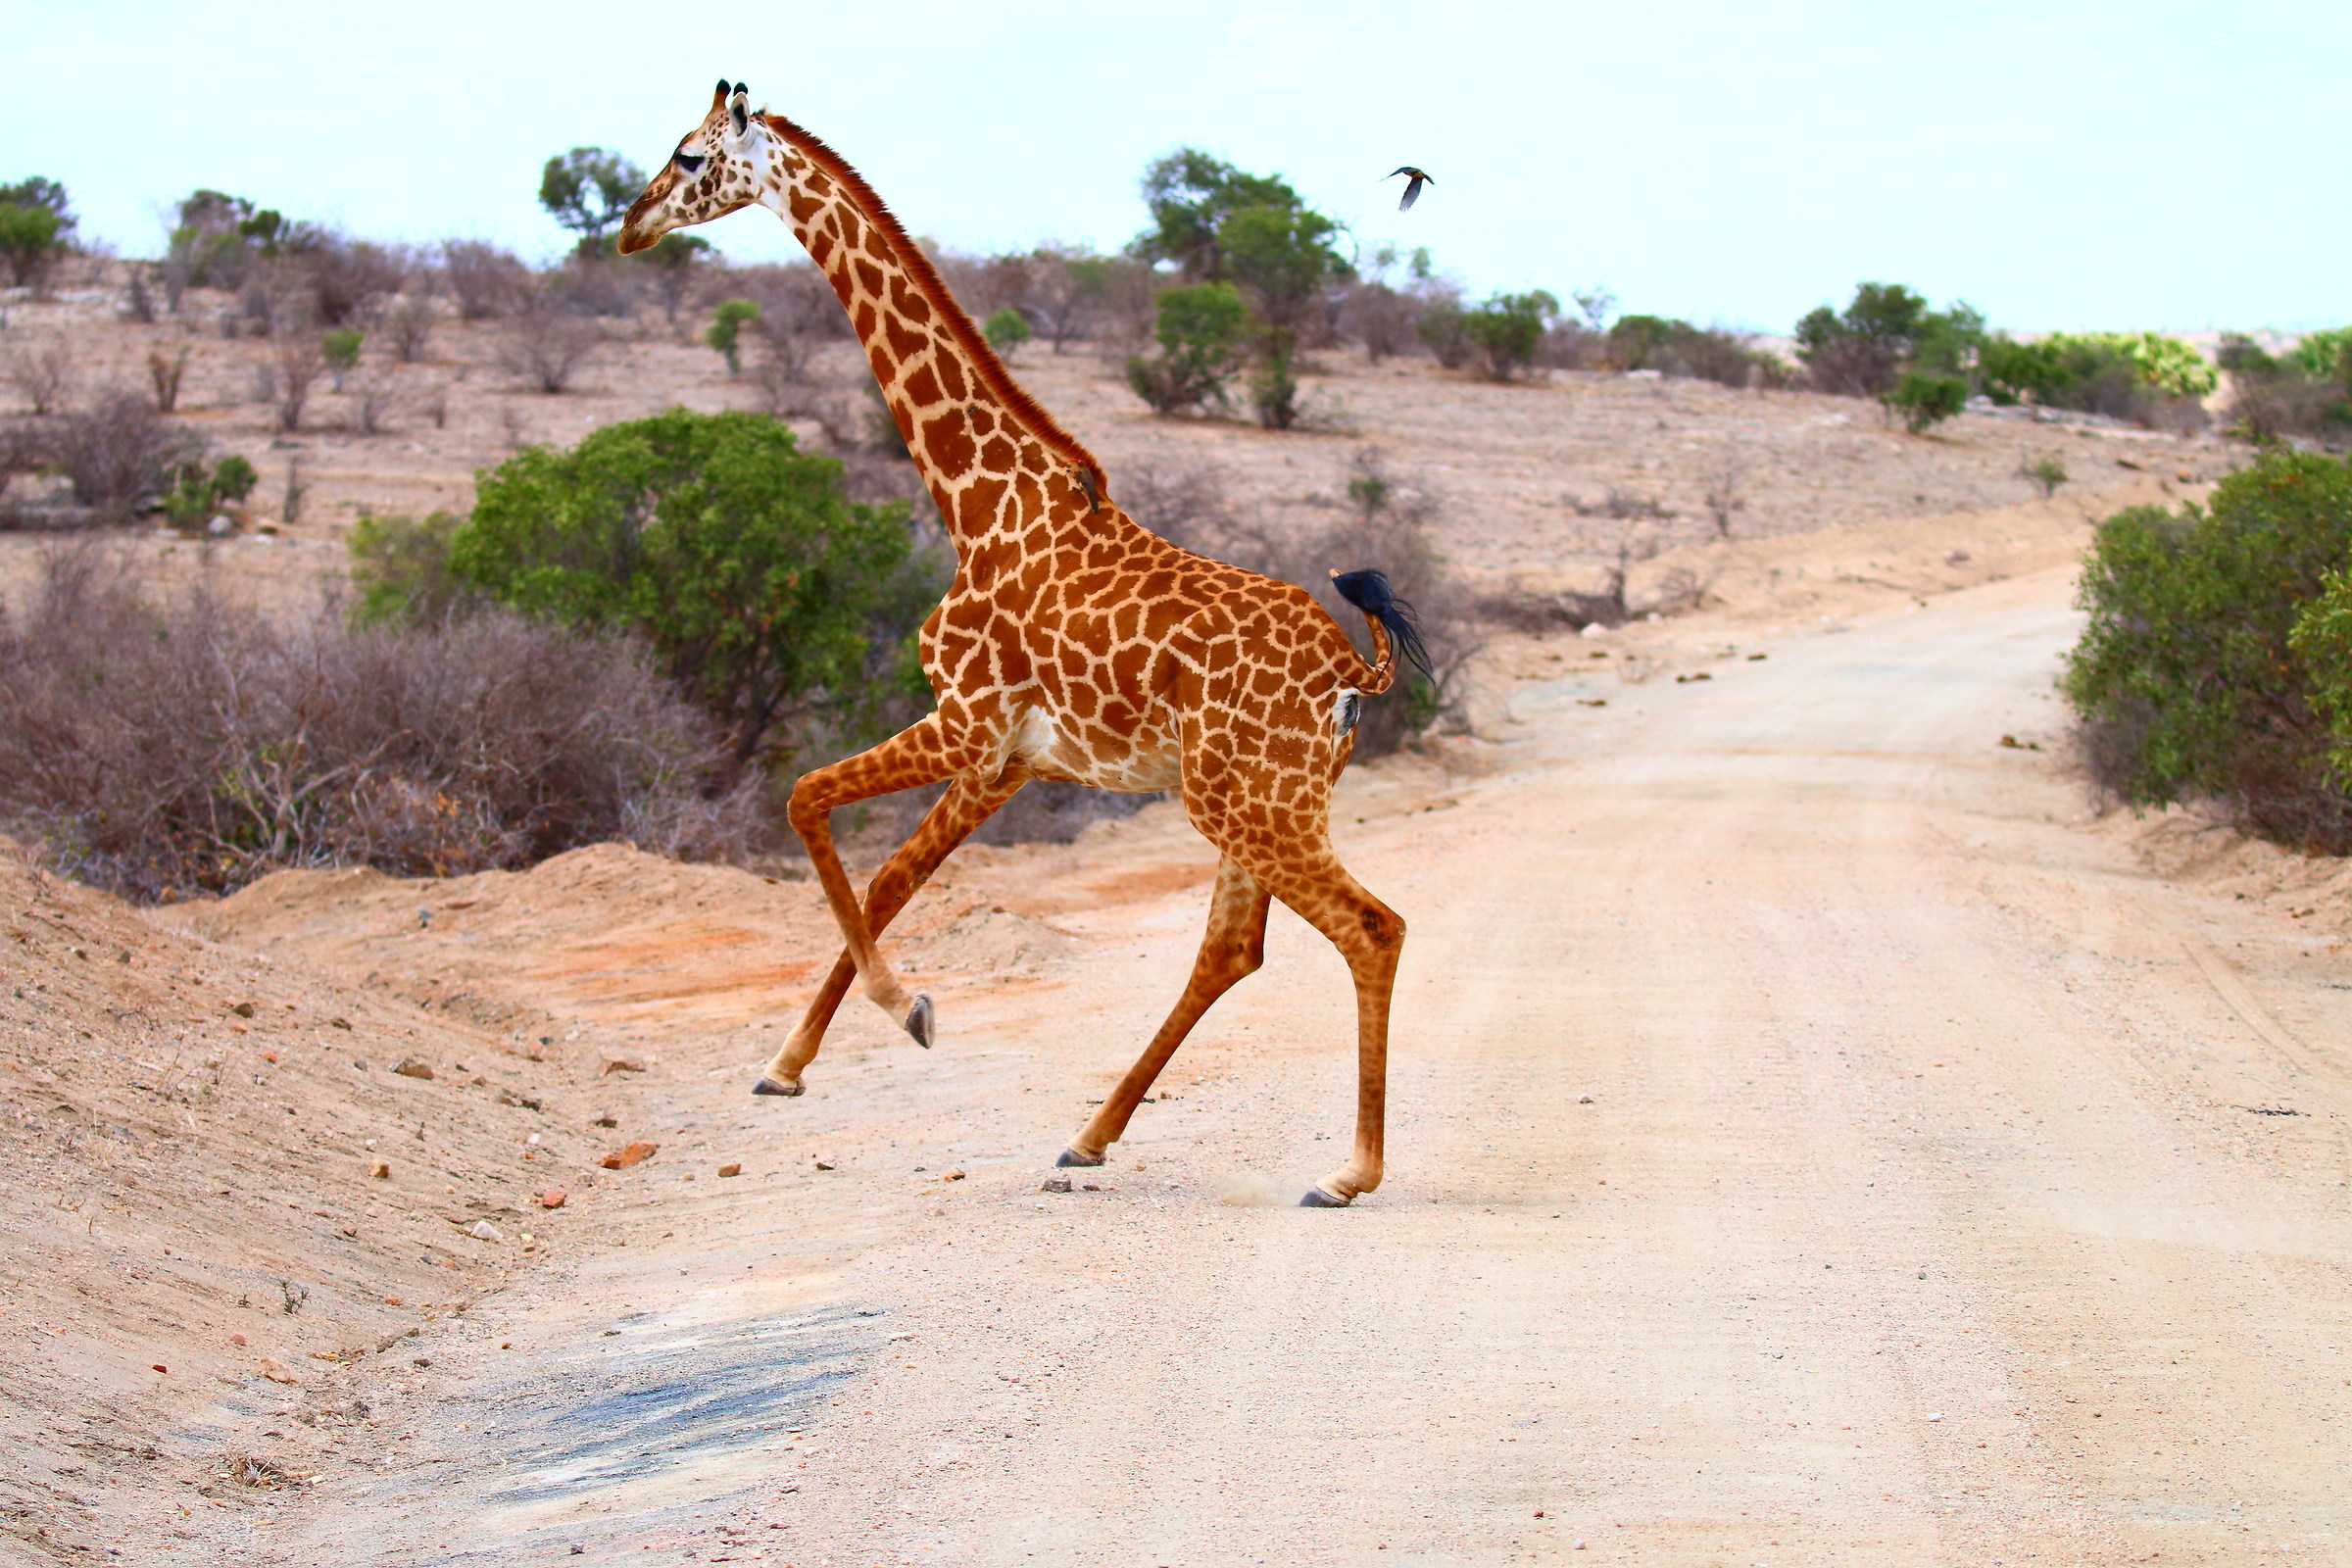 Prima giraffa...